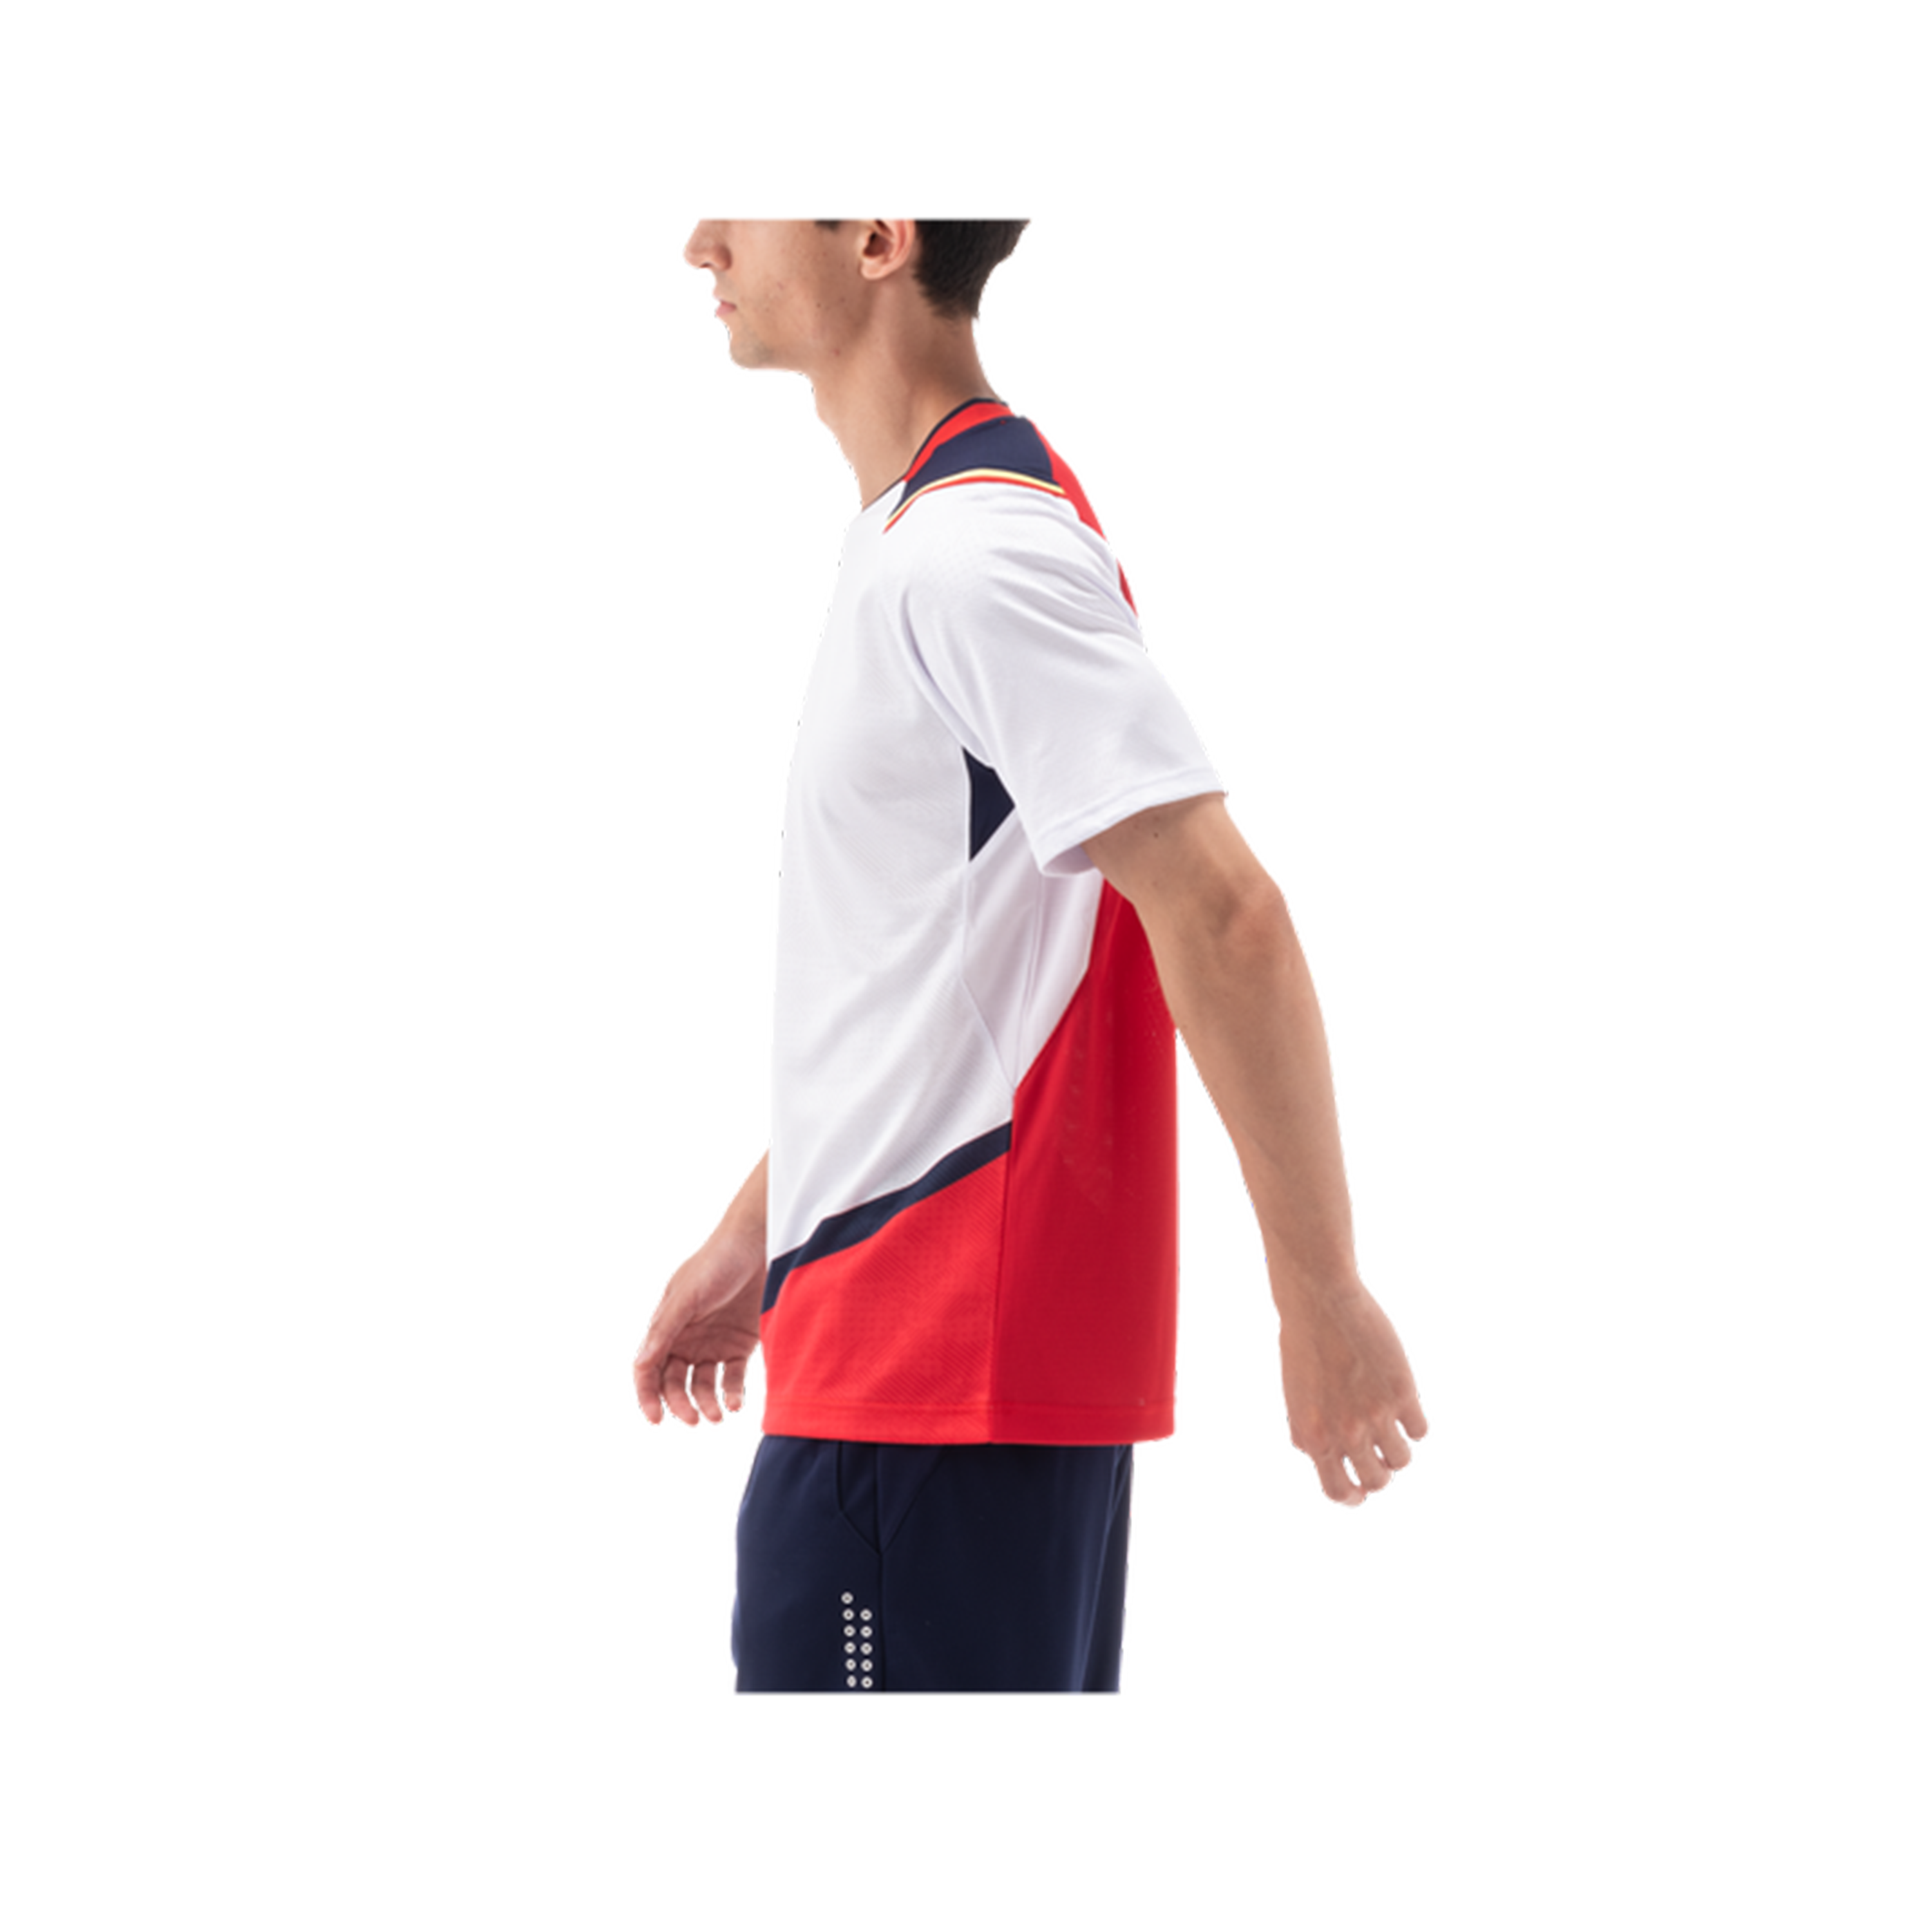 Yonex Premium Badminton/ Sports Shirt 10489 White MEN'S (Clearance)